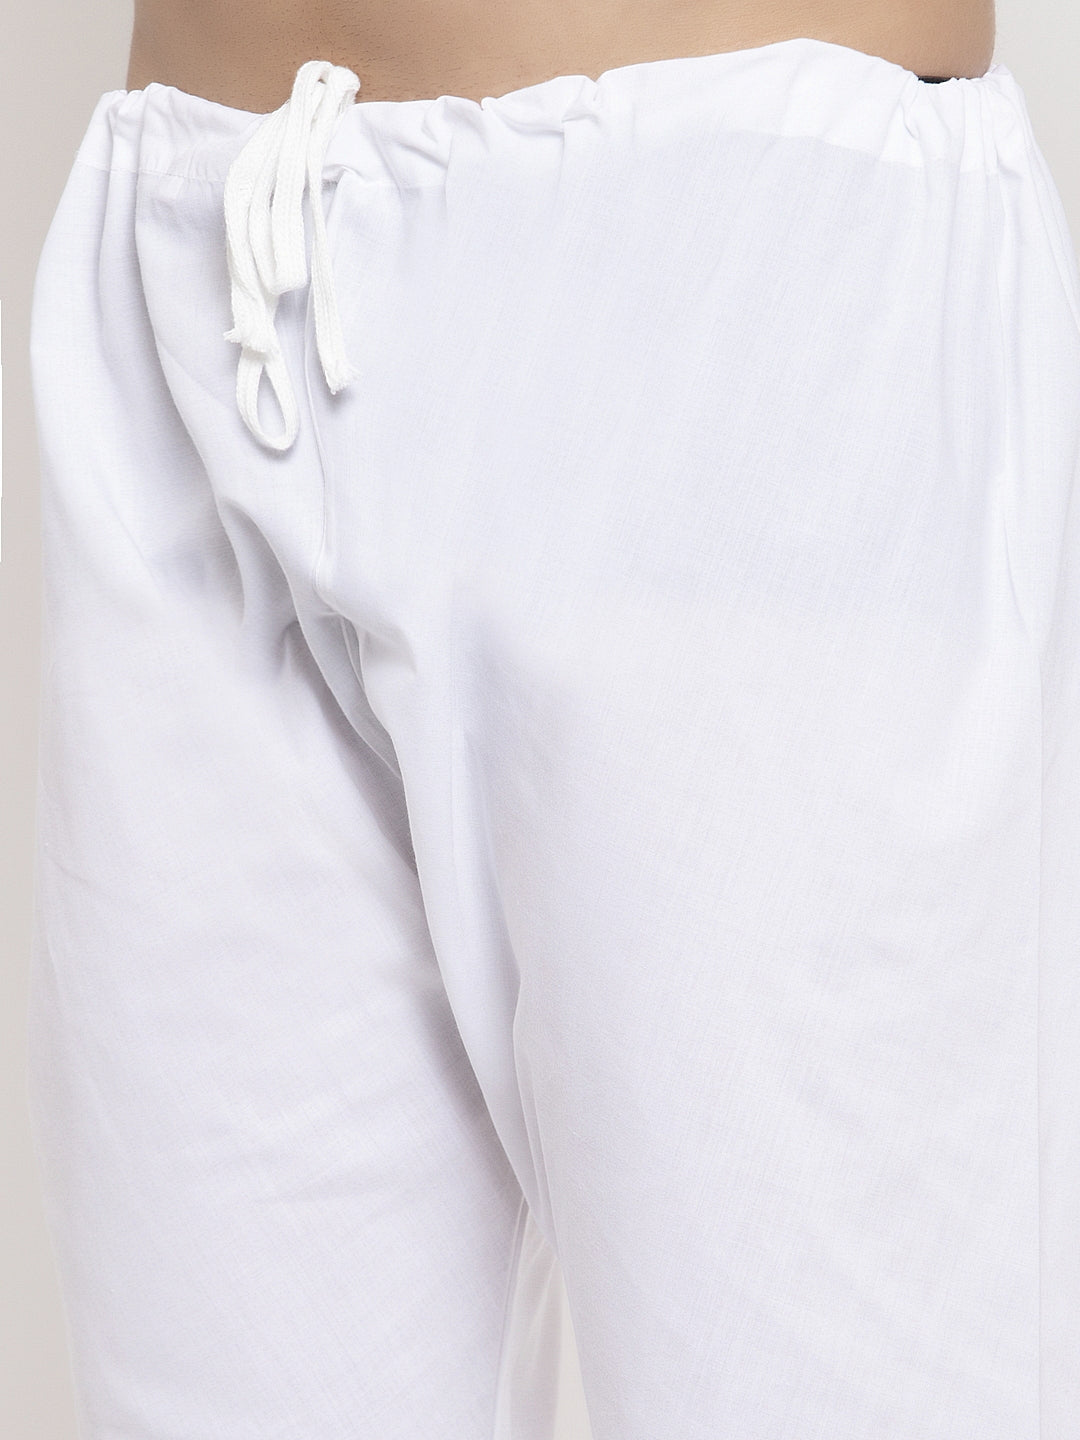 KLOTTHE Maroon Cotton Woven Design Kurta With Pyjama